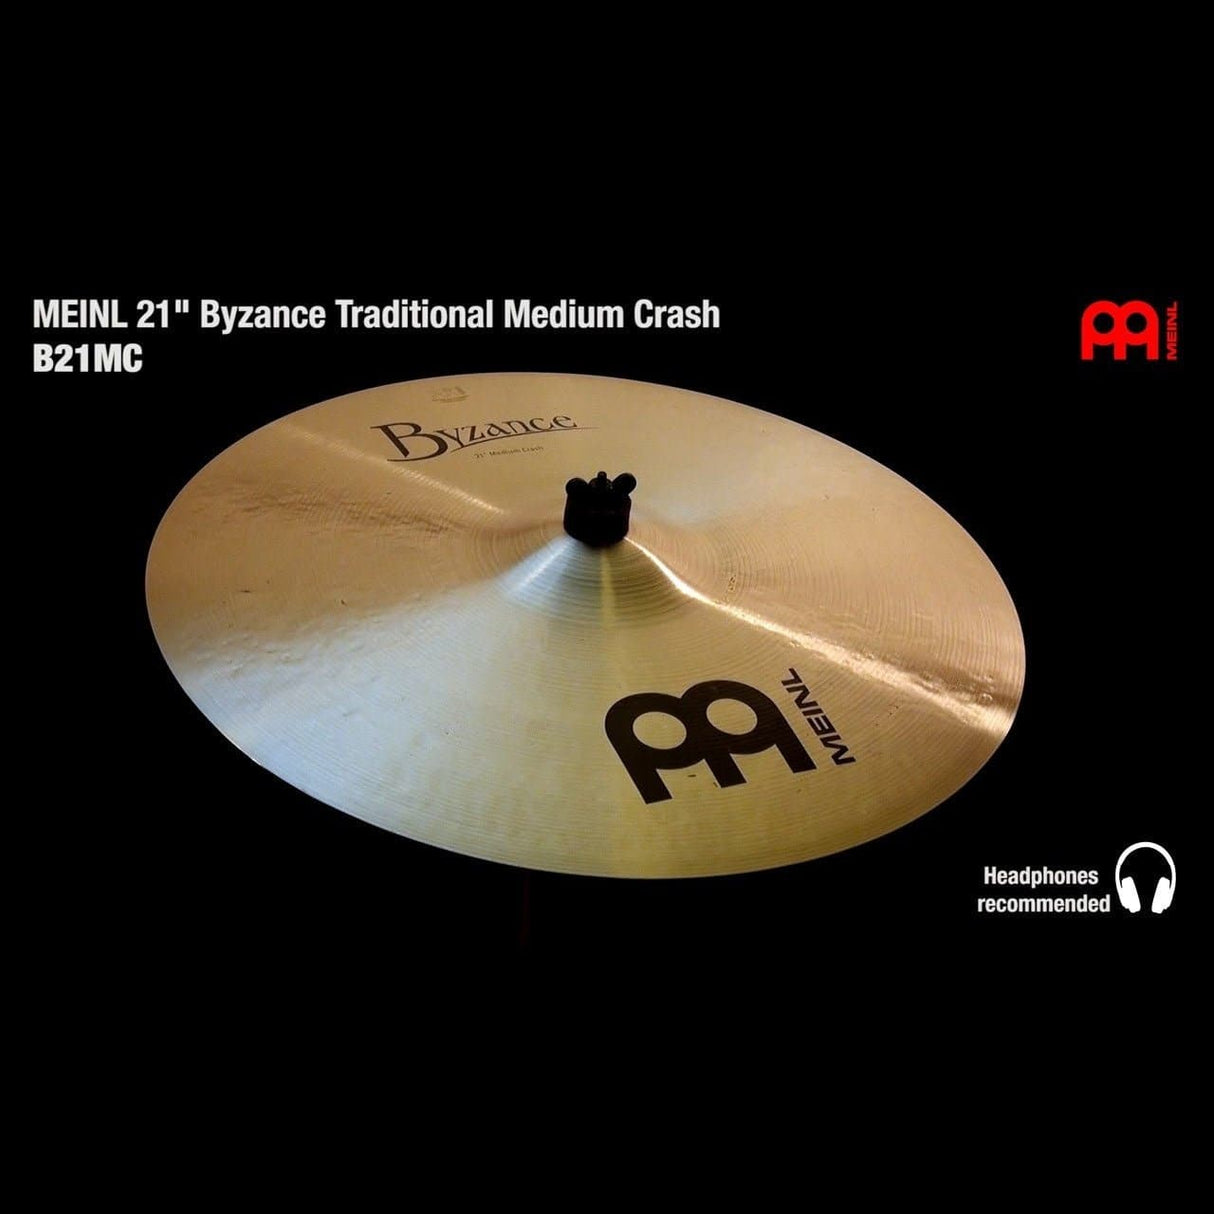 Meinl Byzance Traditional Medium Crash Cymbal 21